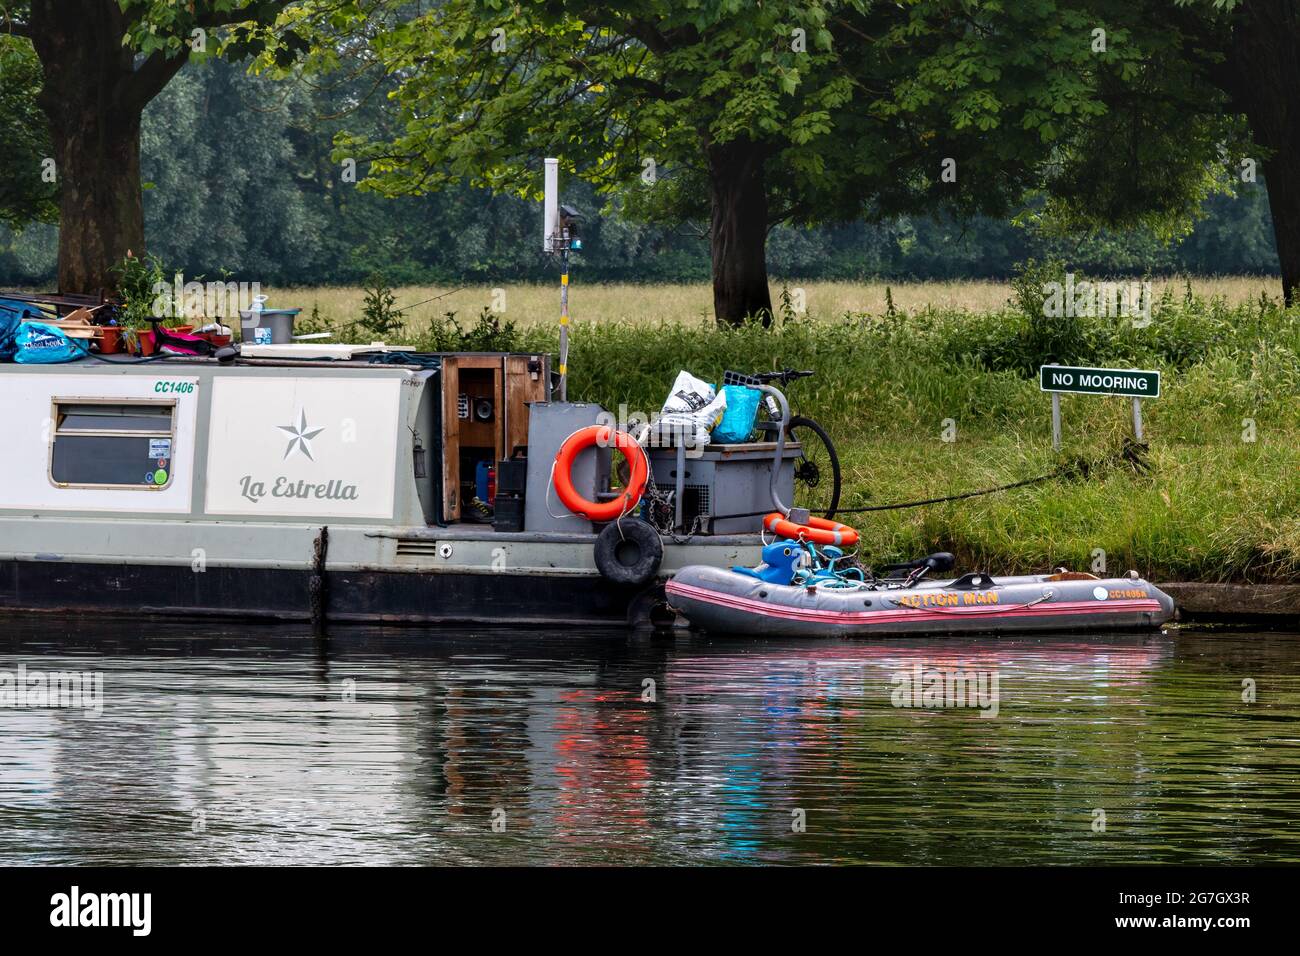 Ein Hausboot auf dem River Cam scheint die Regeln zu missachten, indem es am No Mooring-Schild festlegt. Cambridge, Großbritannien. Stockfoto